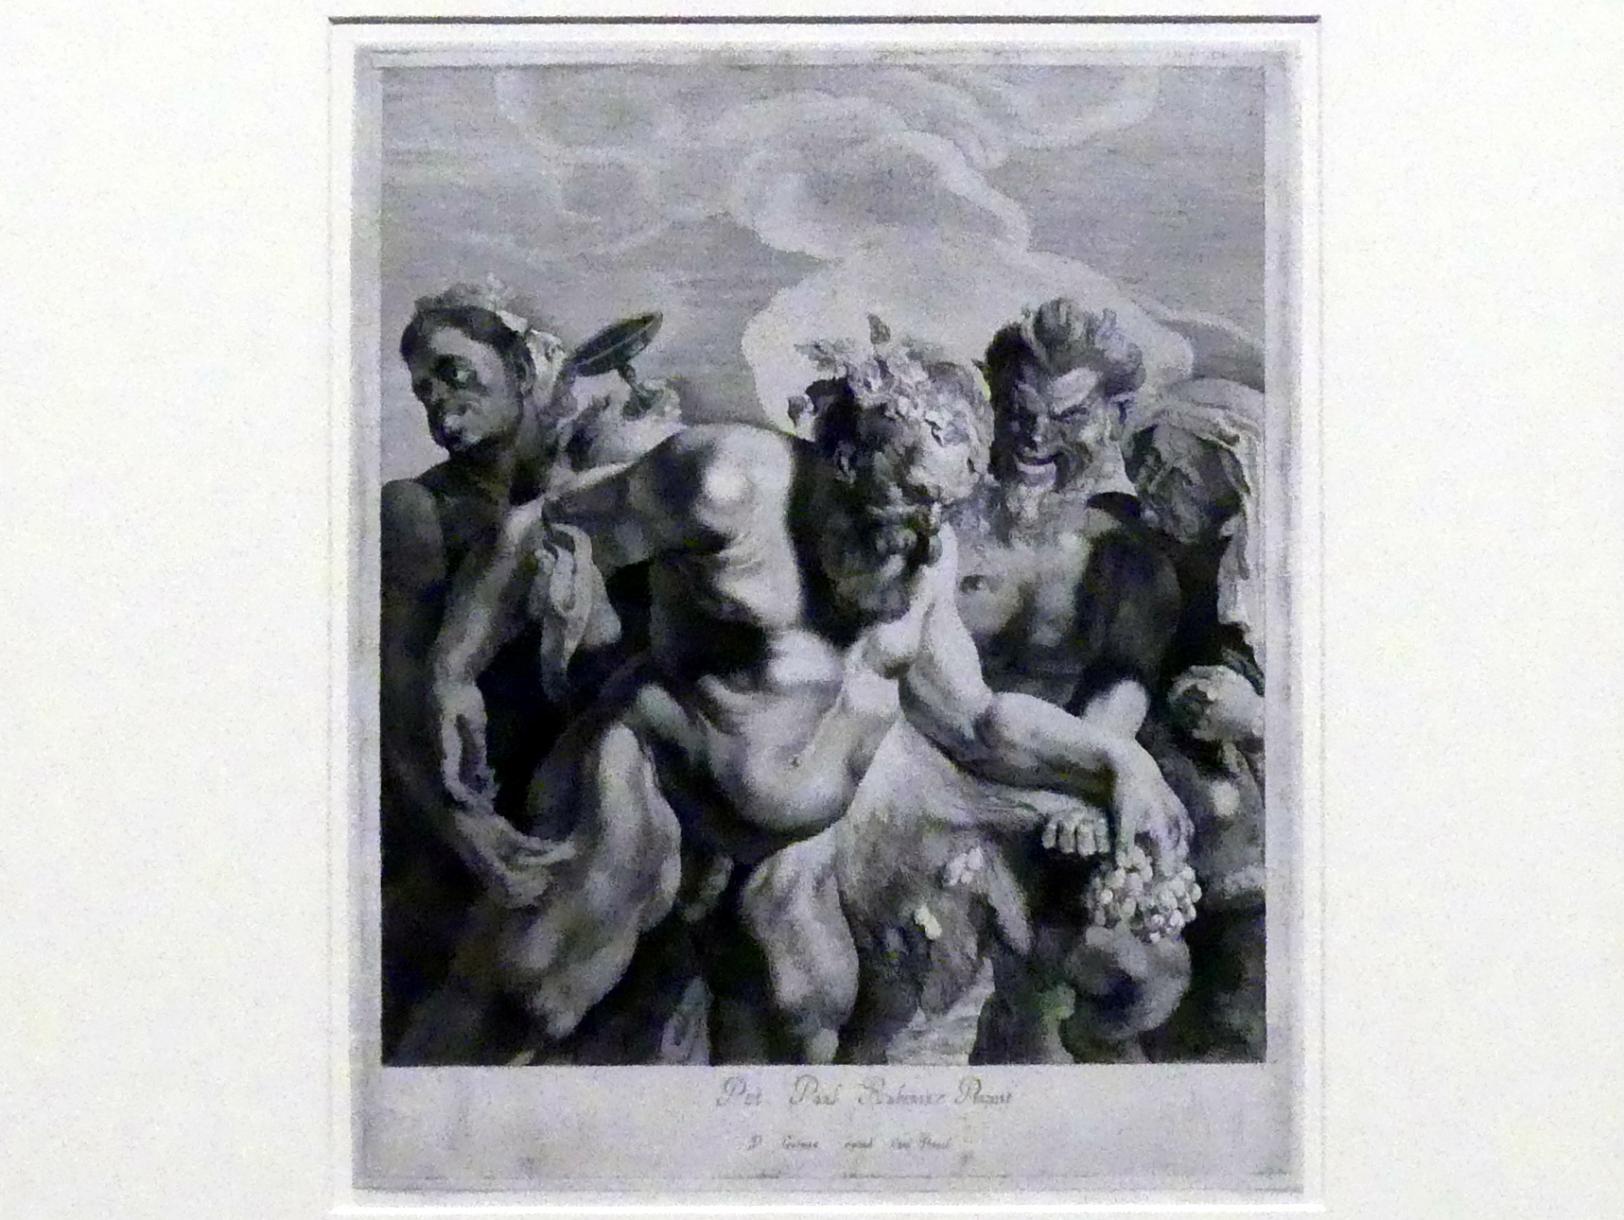 Pieter Claesz. Soutman (1620–1642), Der trunkene Silen, 2. Zustand, München, Alte Pinakothek, Ausstellung "Van Dyck" vom 25.10.2019-02.02.2020, Die Anfänge - 1, um 1642